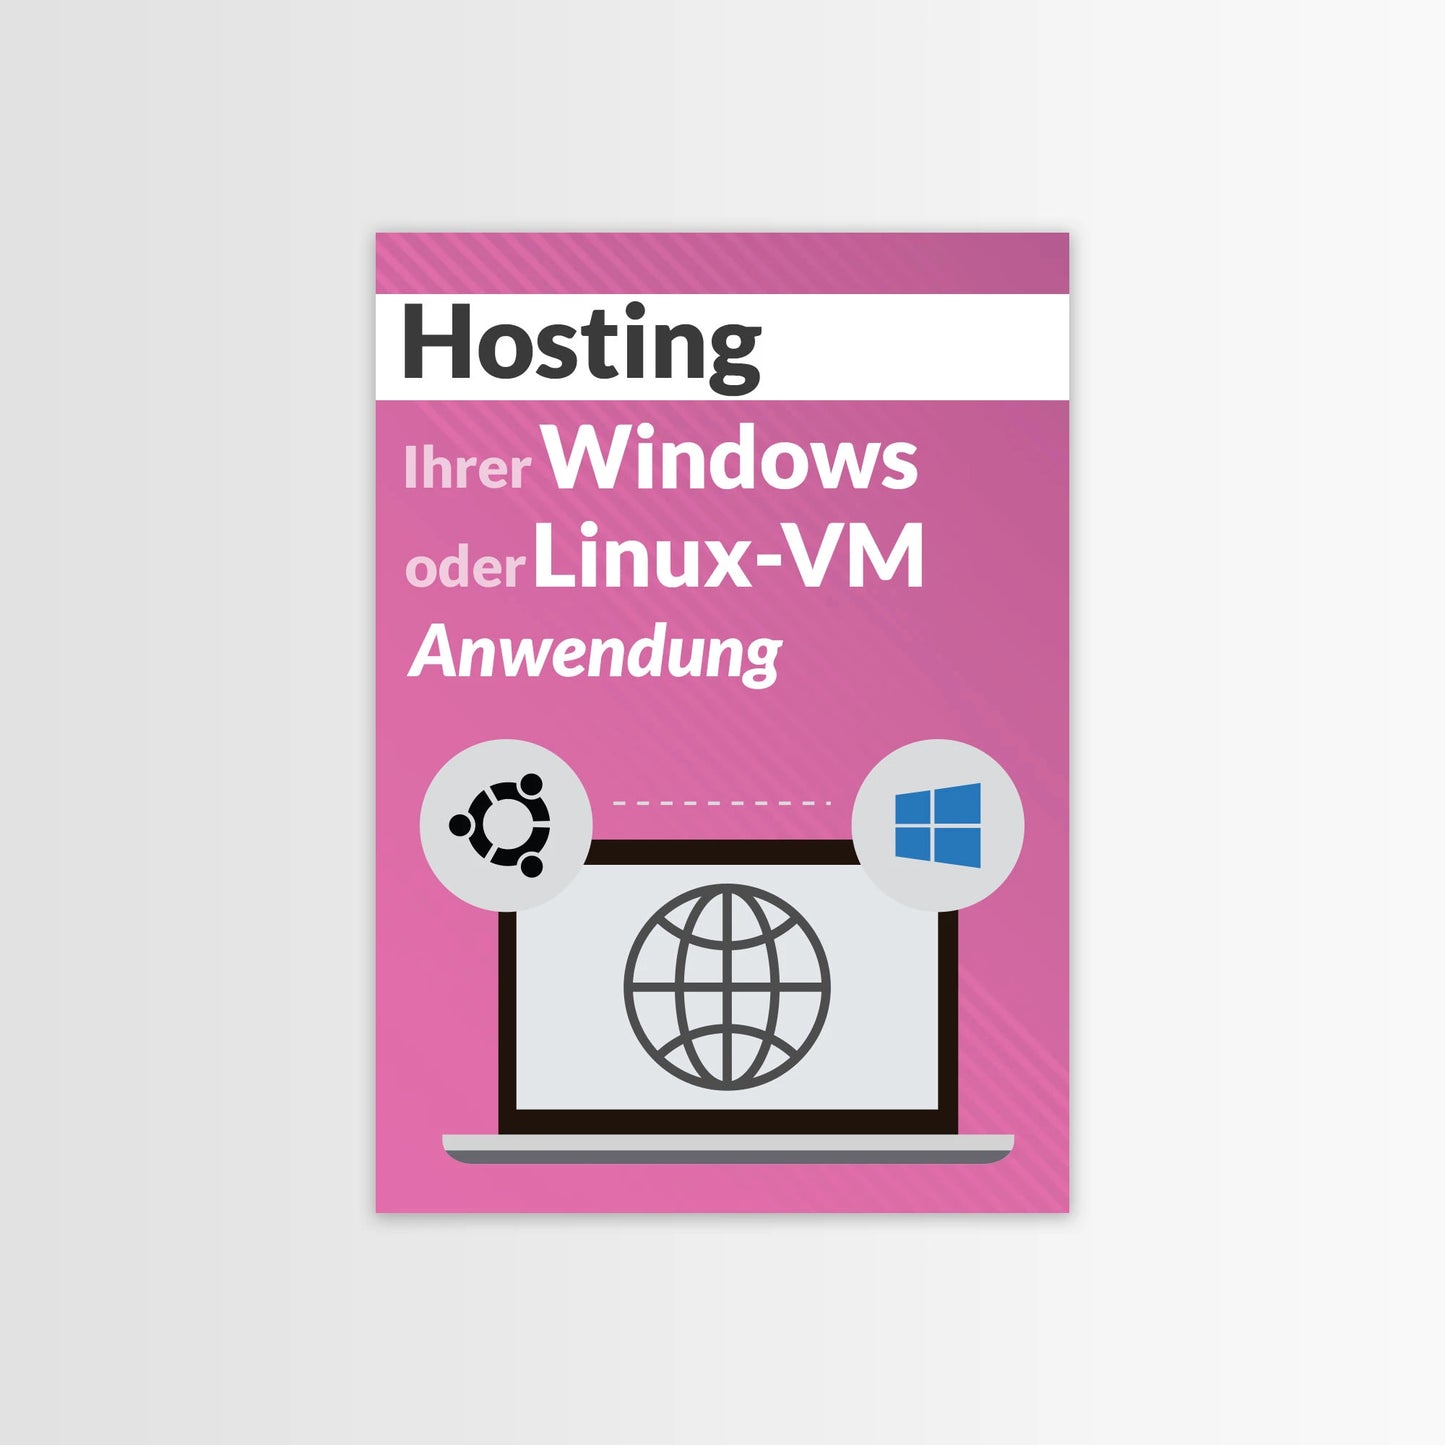 Hosting Ihrer Windows- oder Linux-VM oder Anwendung